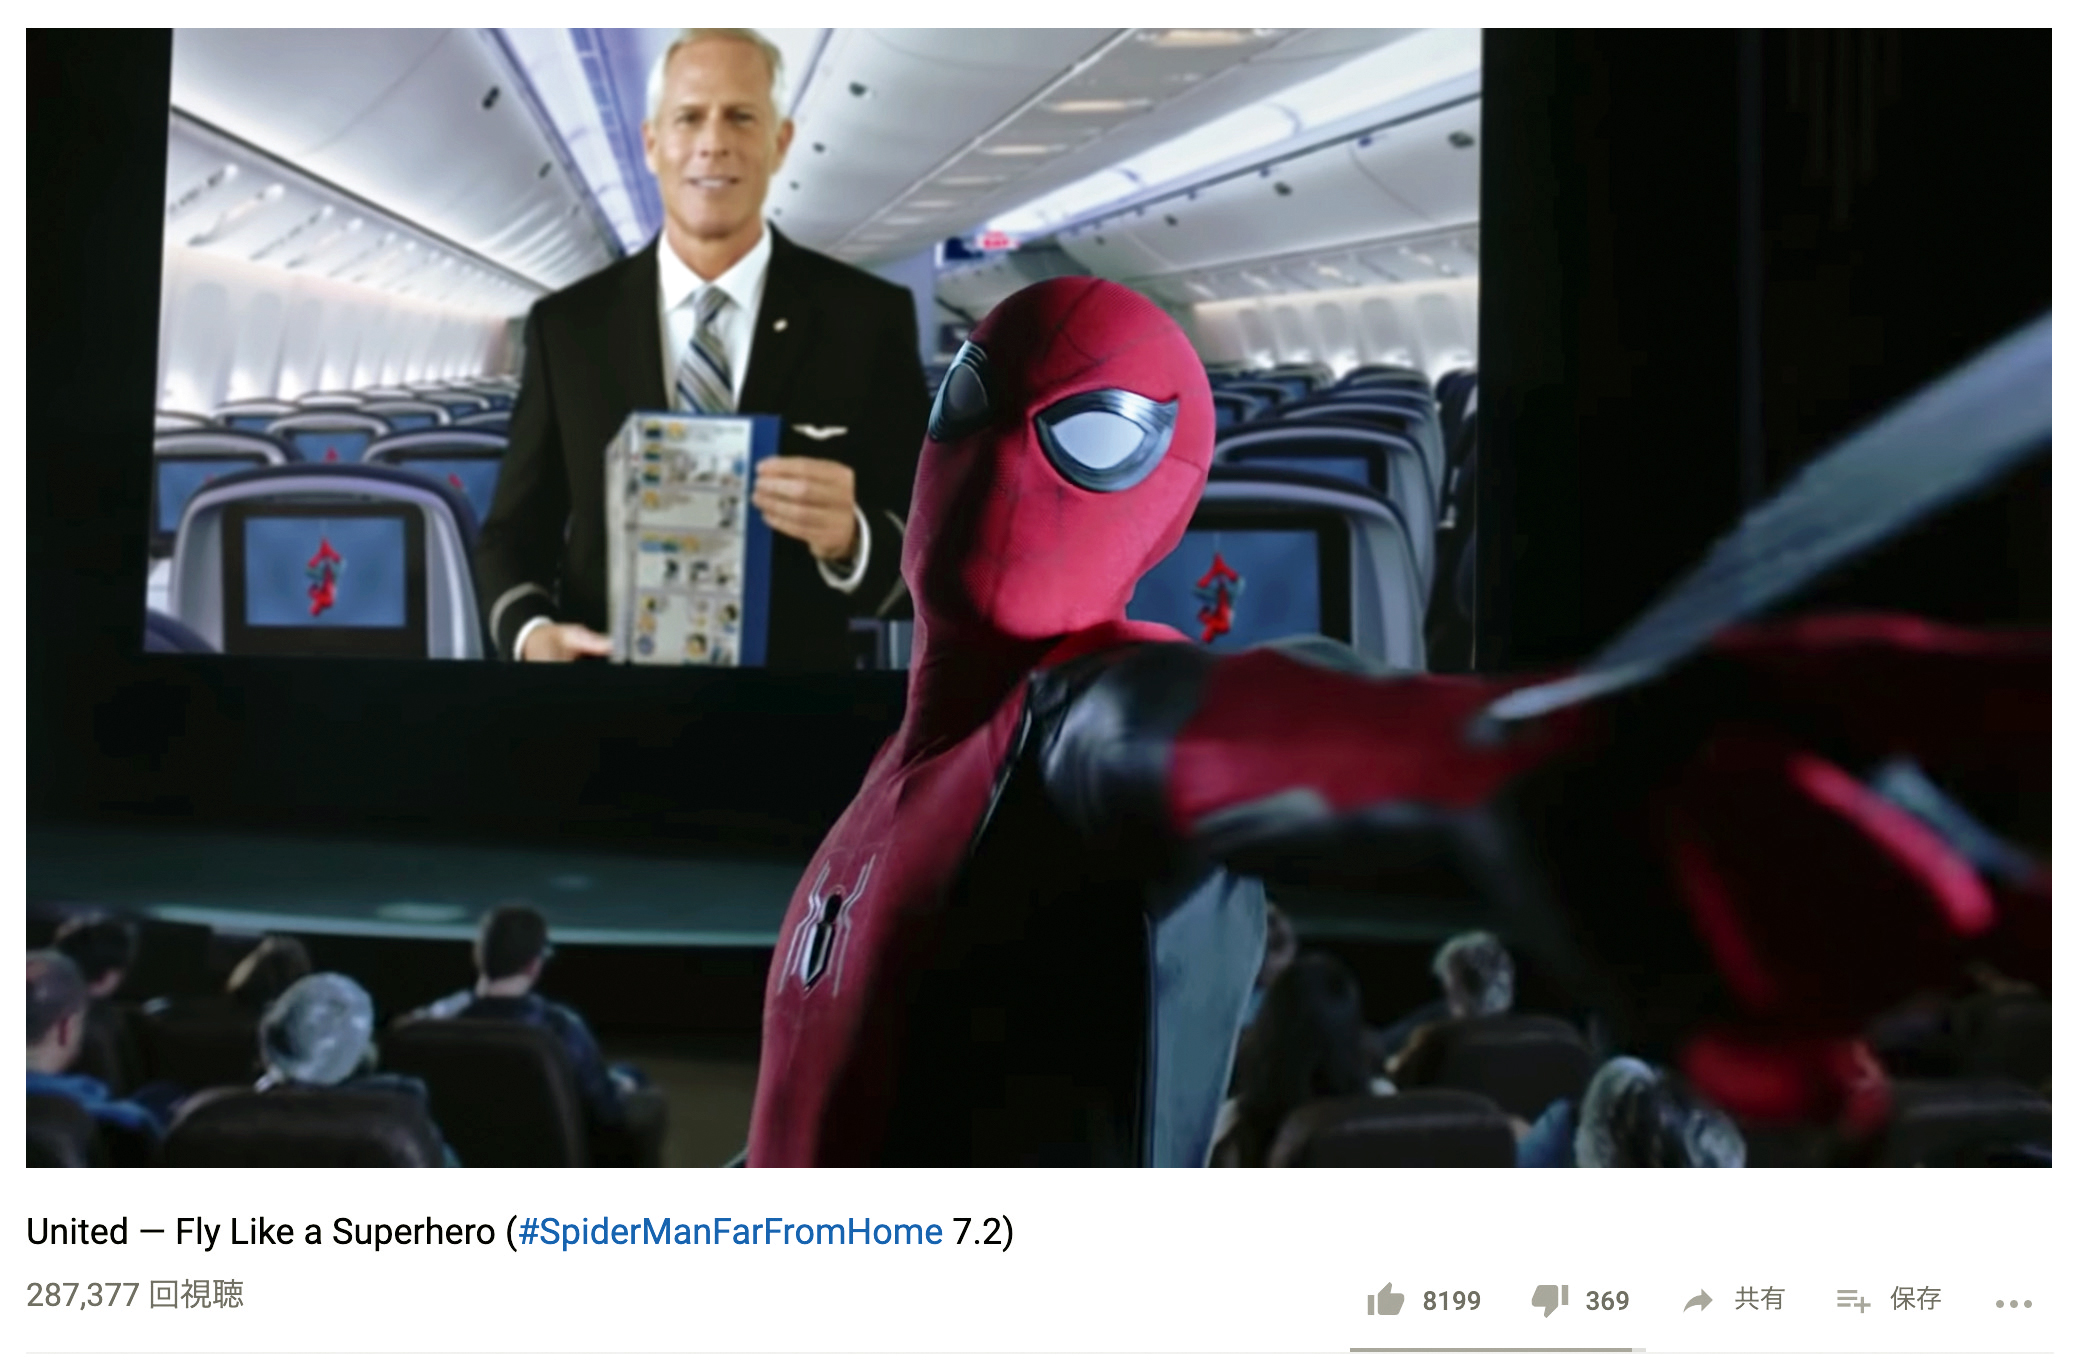 ユナイテッド航空 スパイダーマン出演の機内安全ビデオを上映開始 ニューヨークビズ